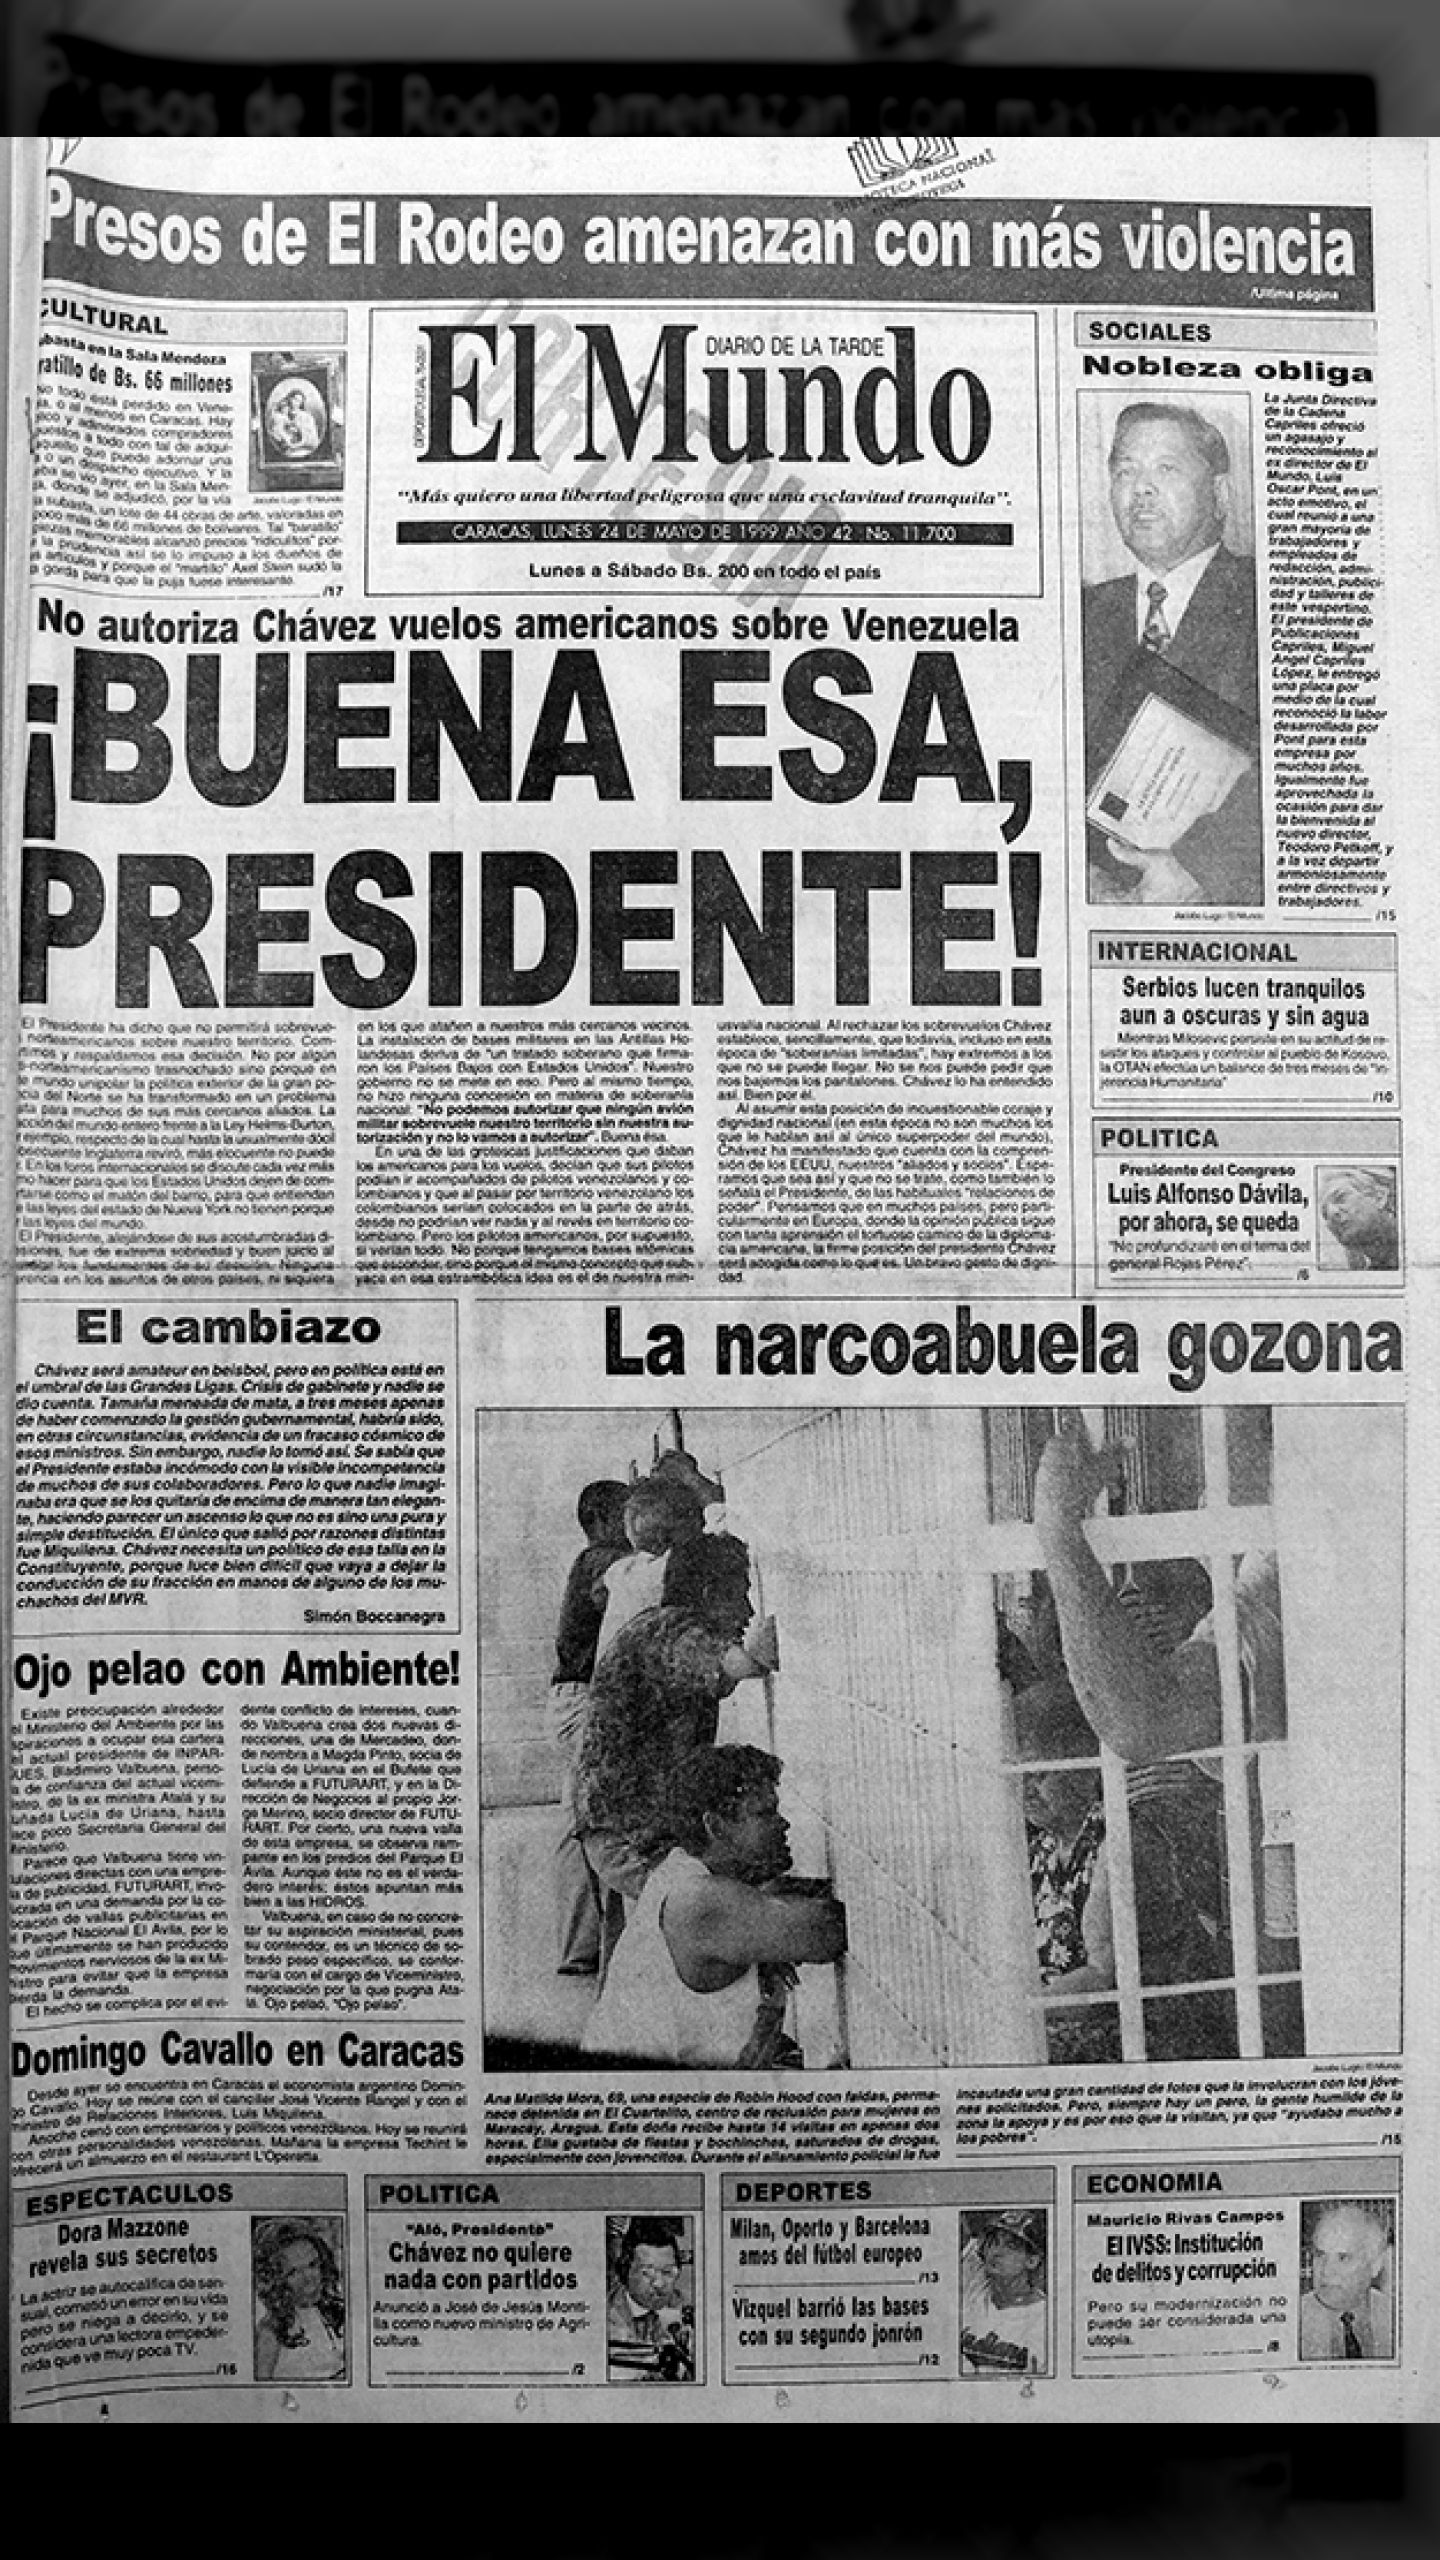 ¡BUENA ESA PRESIDENTE! (El Mundo, 24 de mayo 1999)